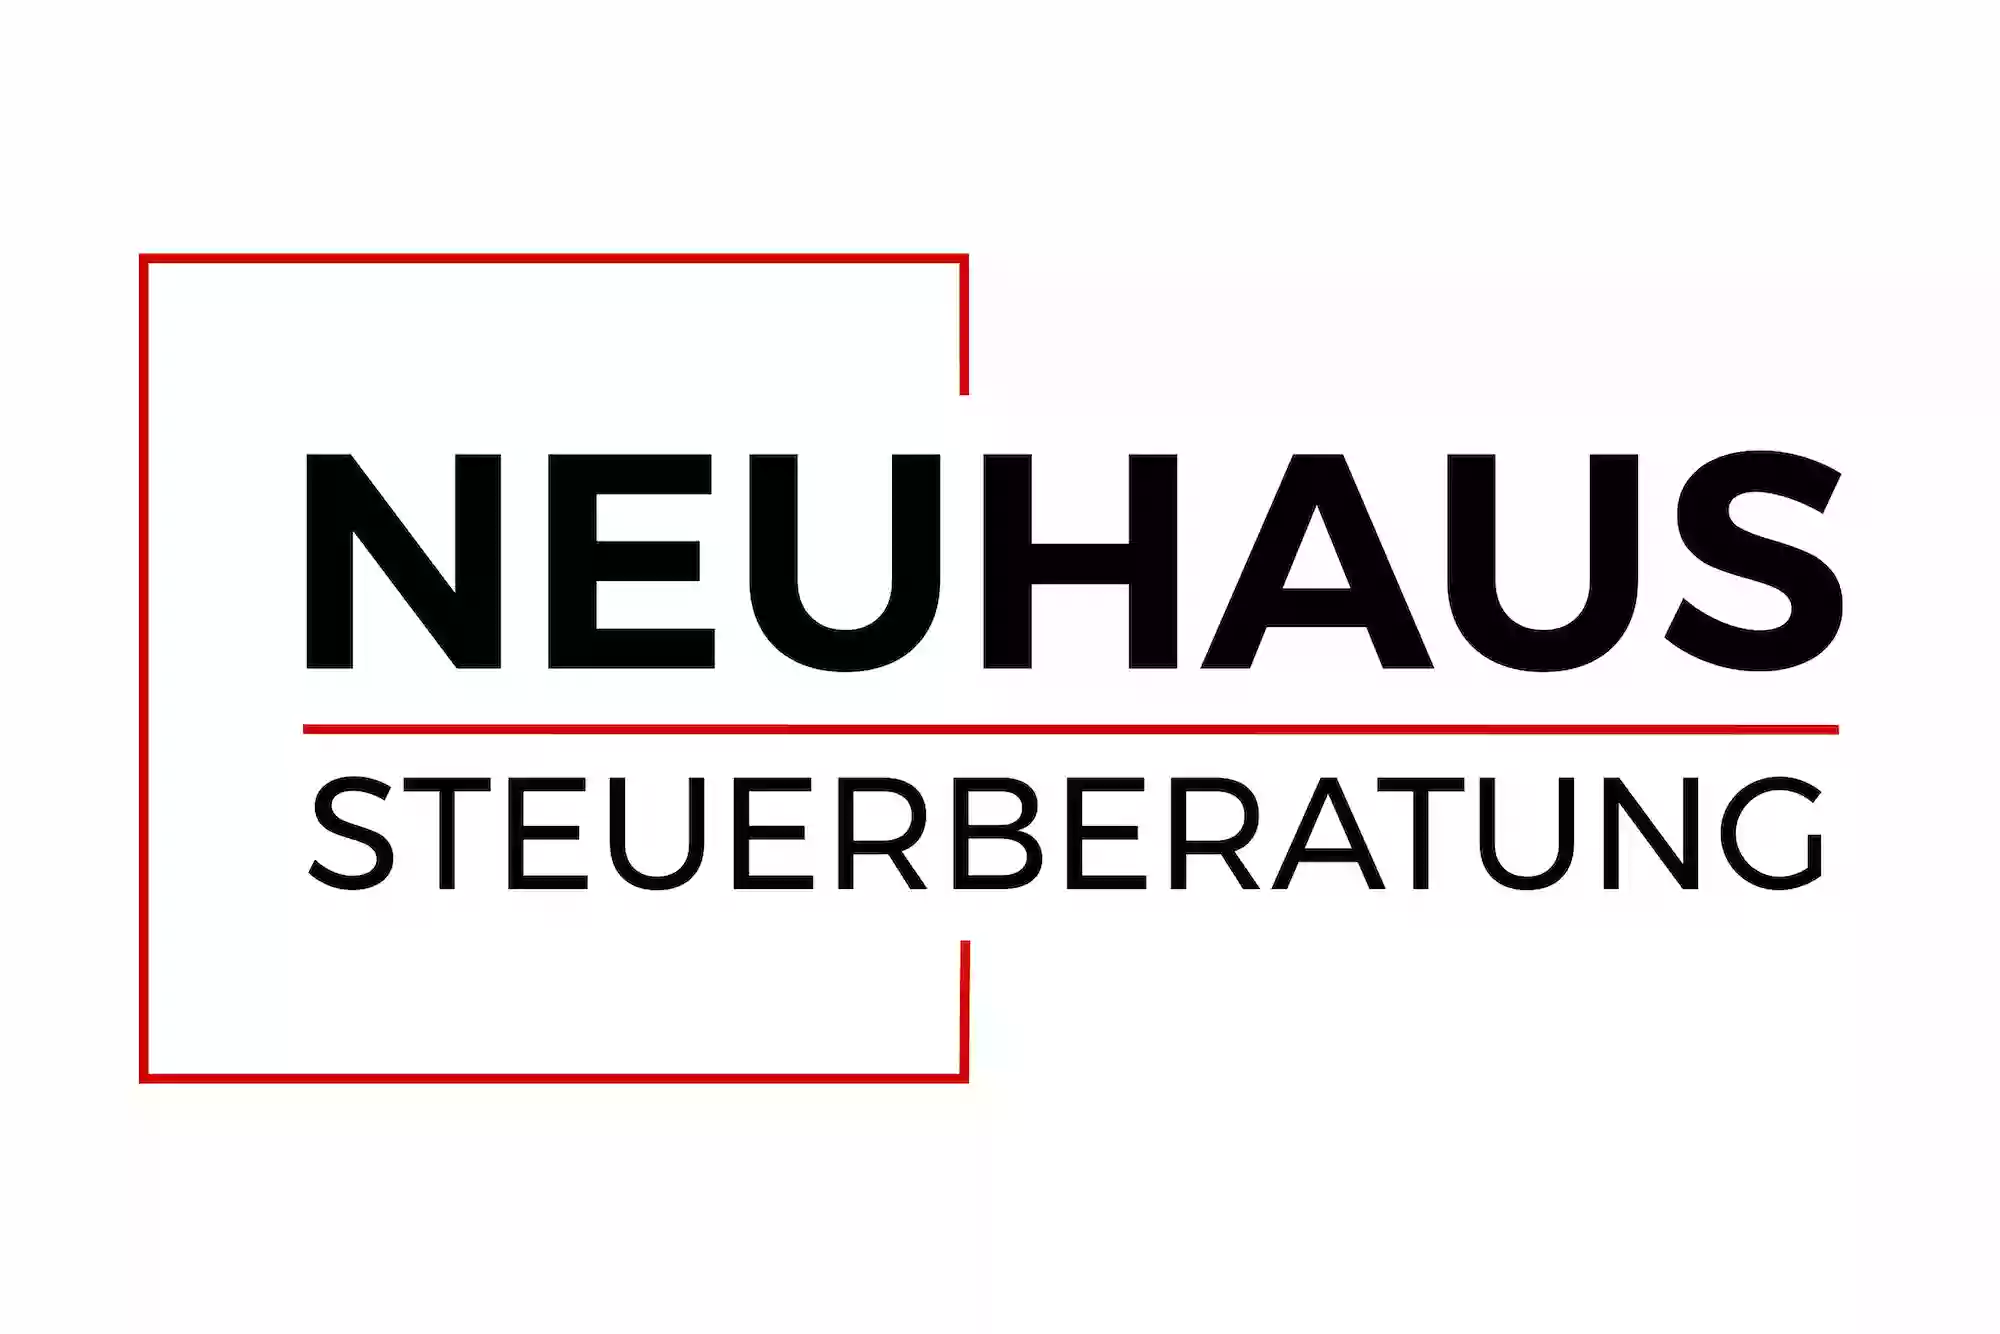 Steuerberatung Neuhaus - Steuerberater Andreas Neuhaus